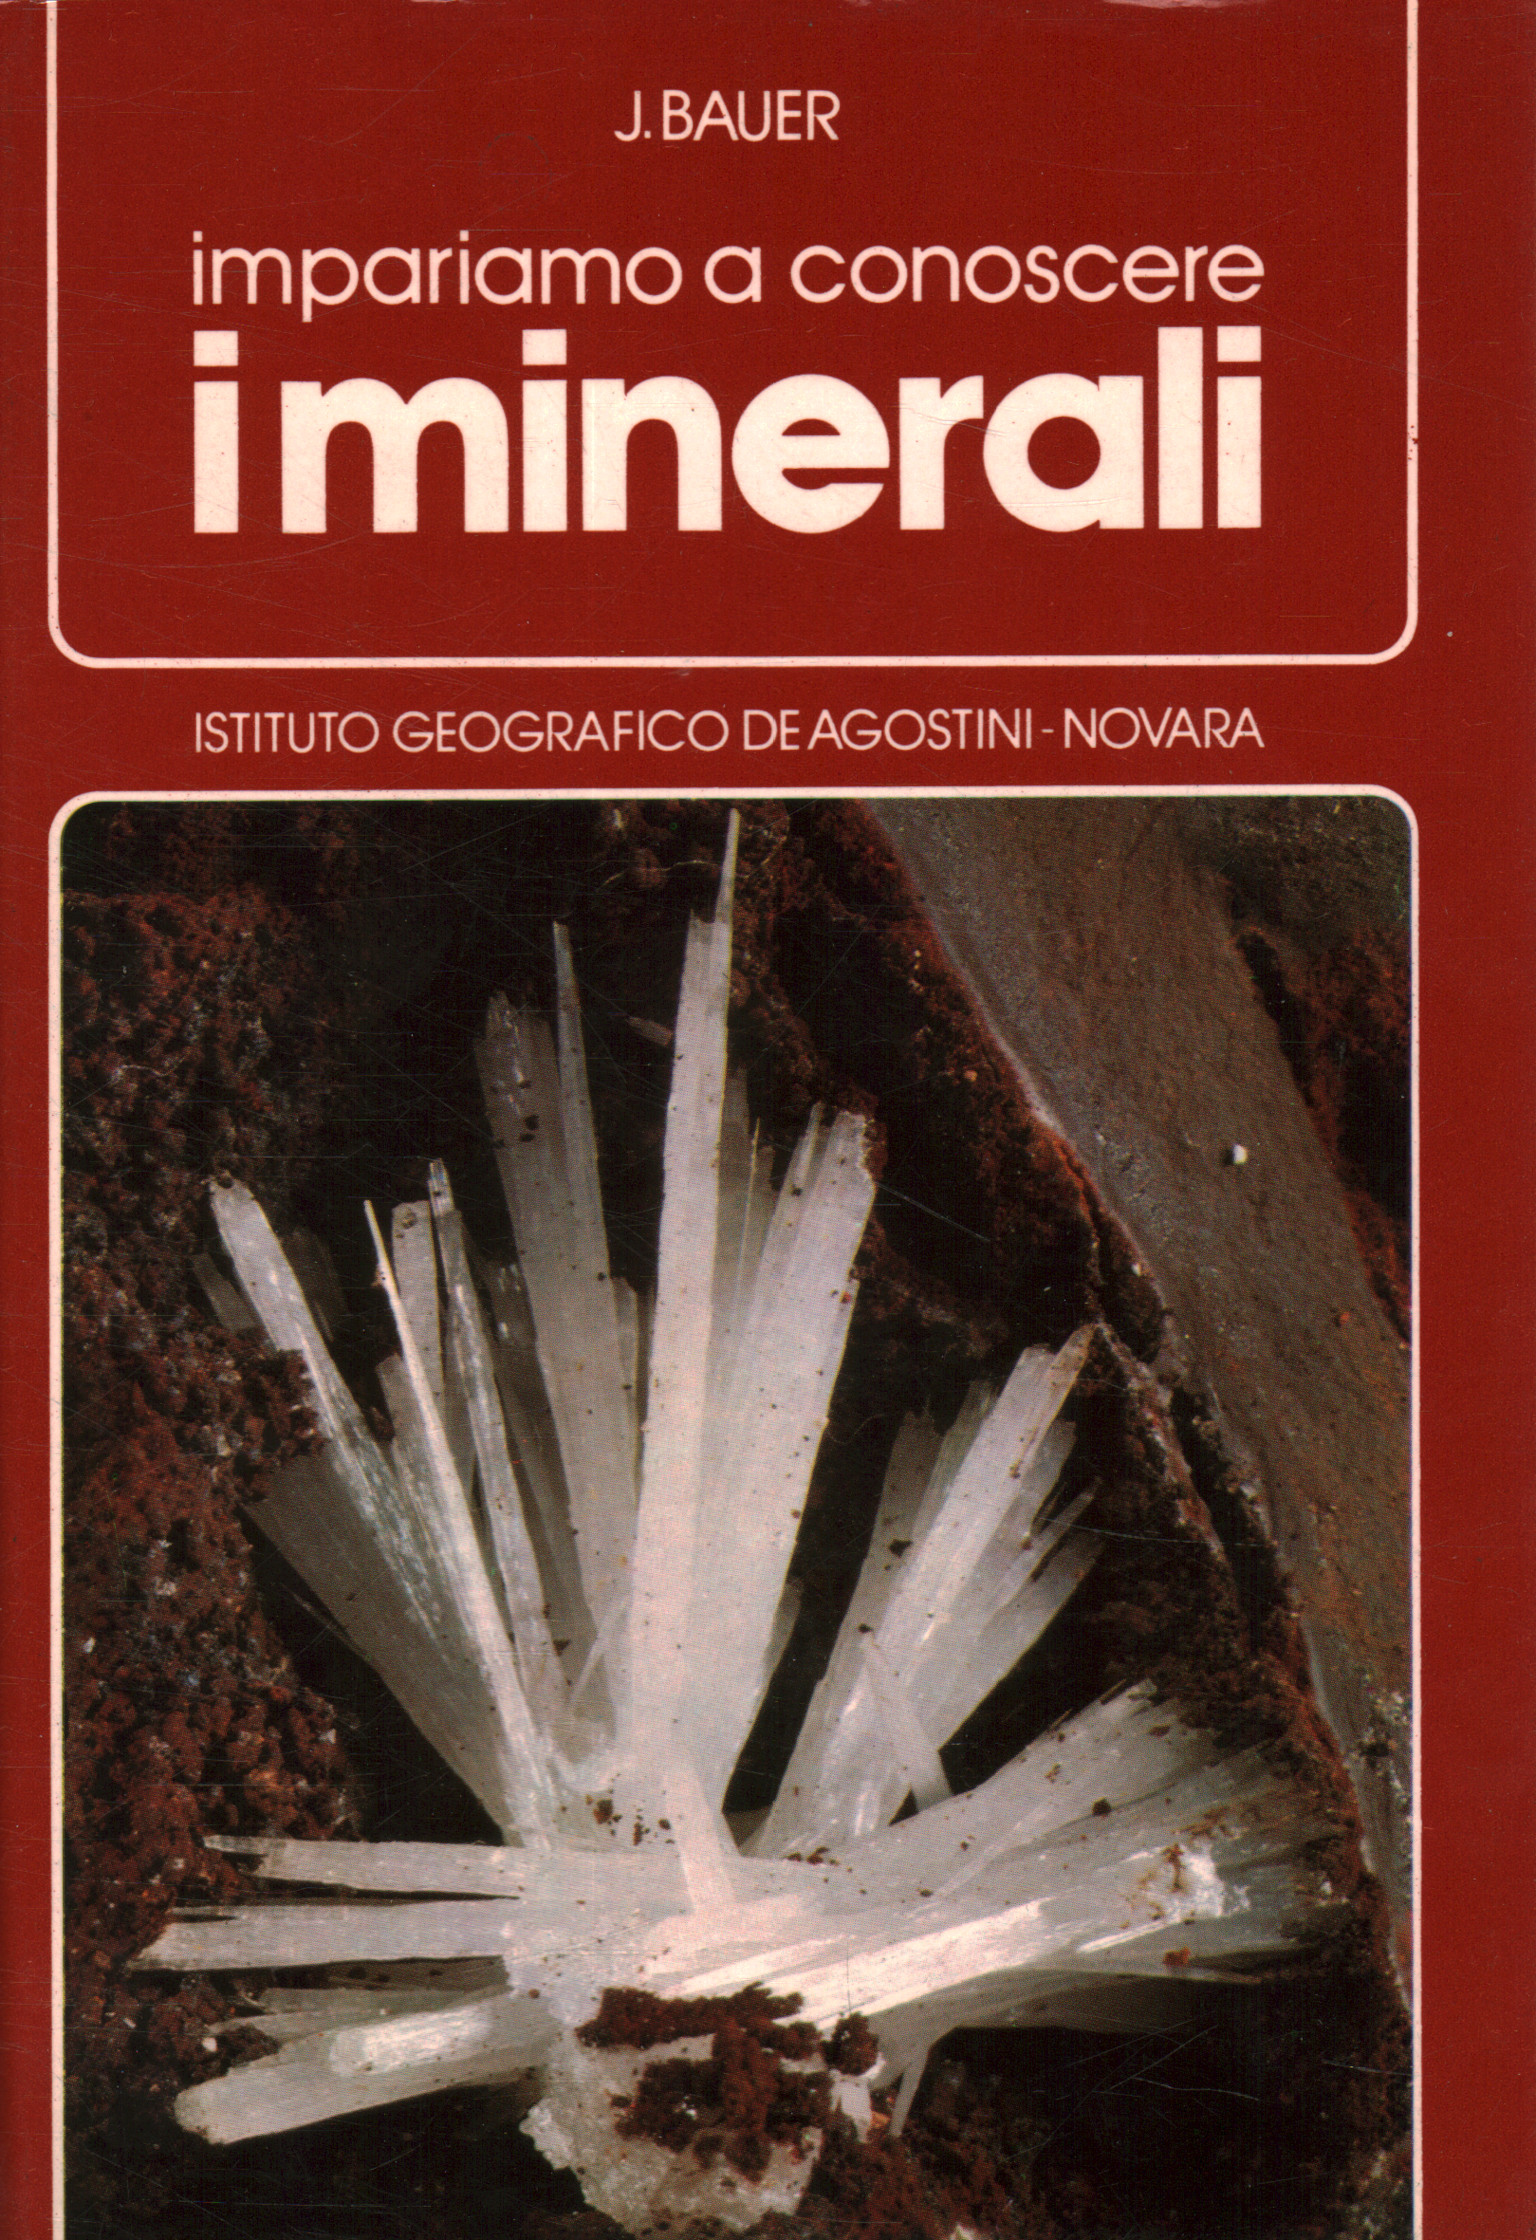 Impariamo a conoscere i minerali